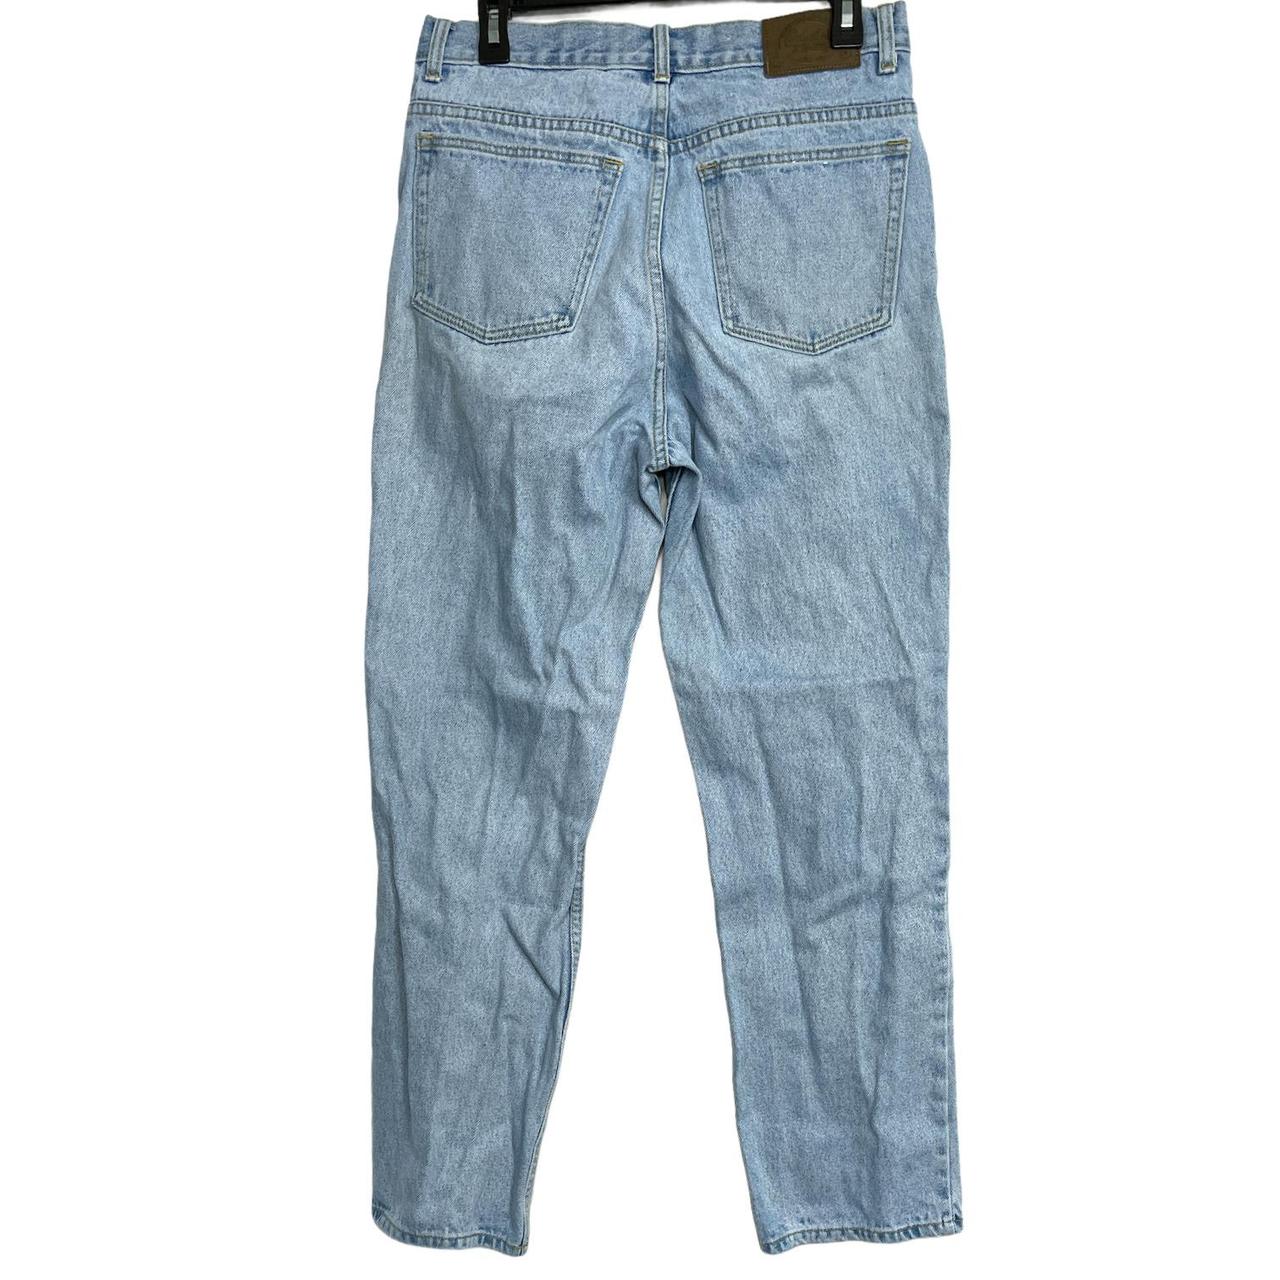 Product Image 3 - Cabela's Jeans Men Size 32